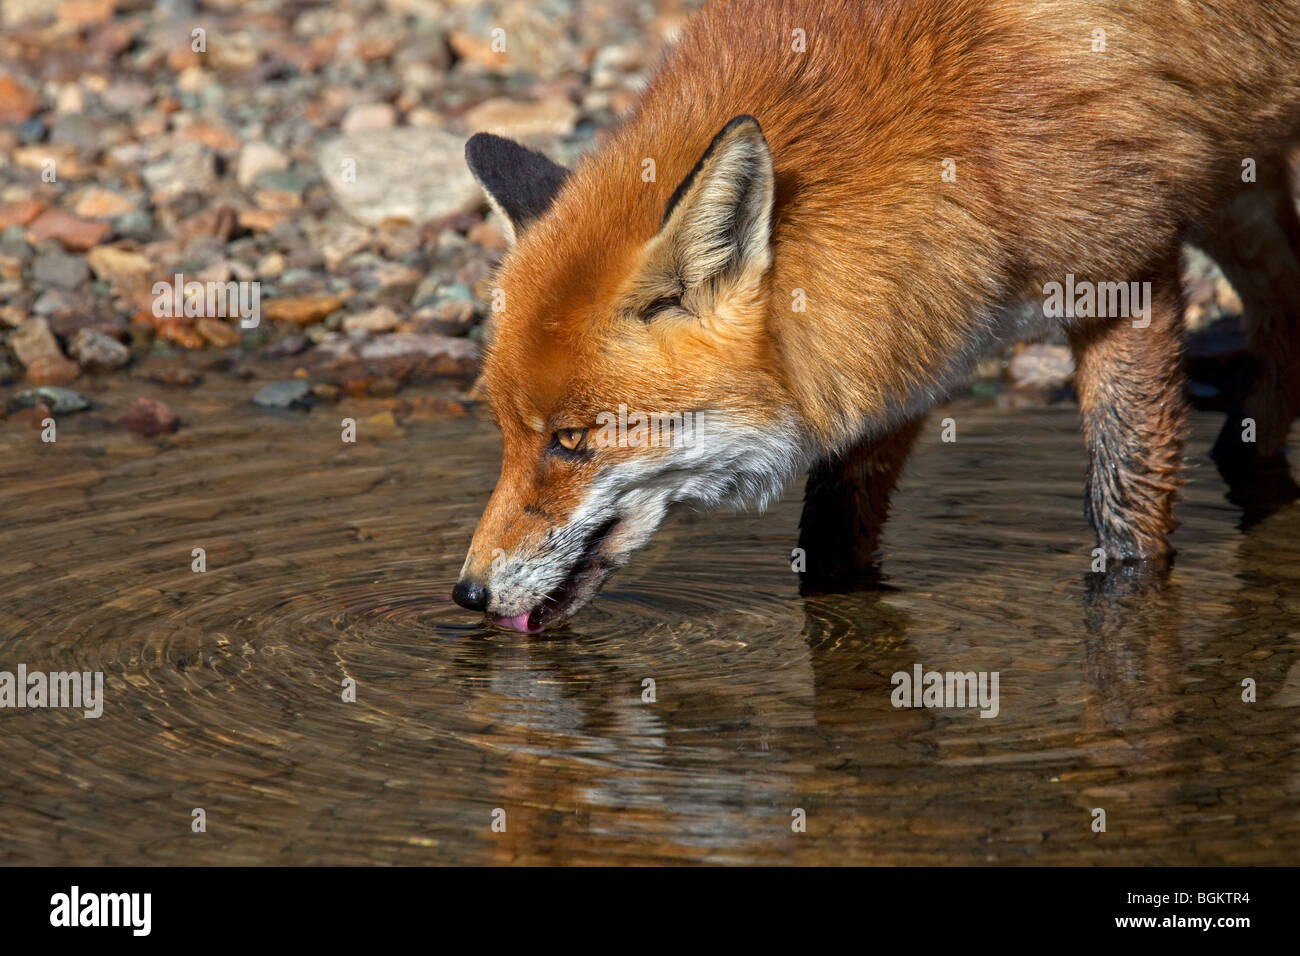 Le renard roux (Vulpes vulpes) de la rivière de l'eau potable Banque D'Images